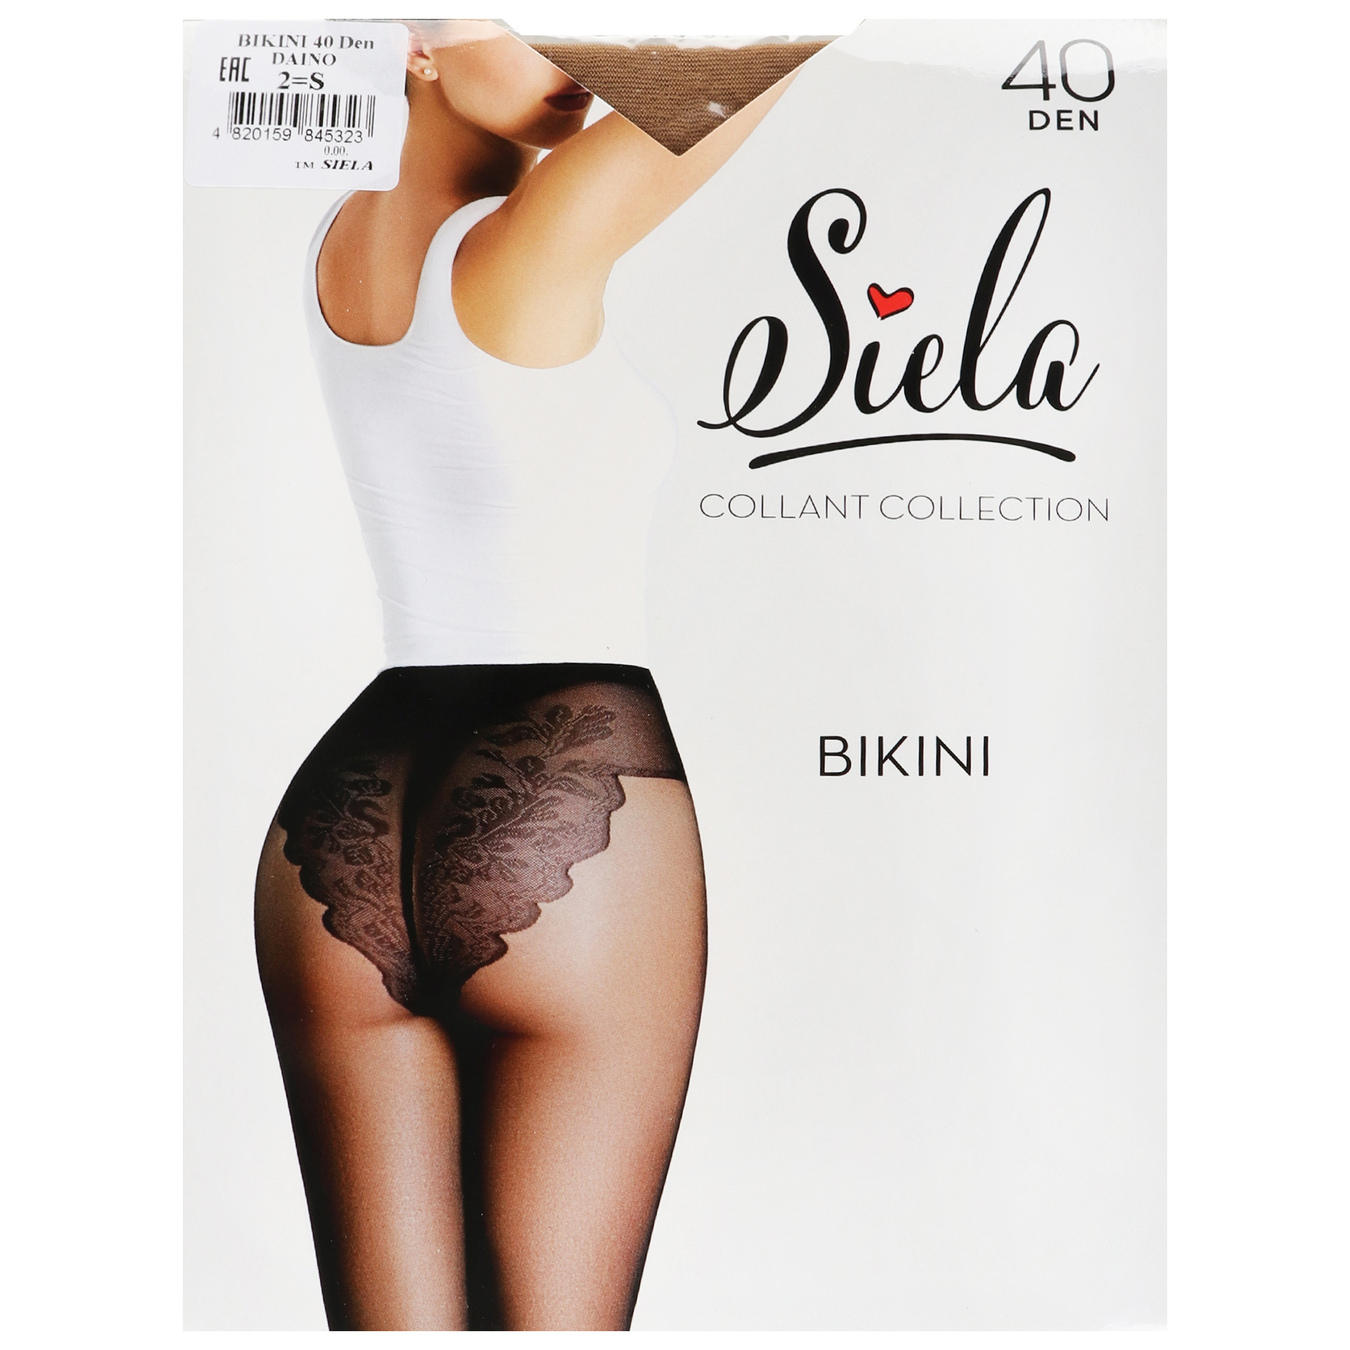 Women's tights Siela Bikini 40 days daino size 2